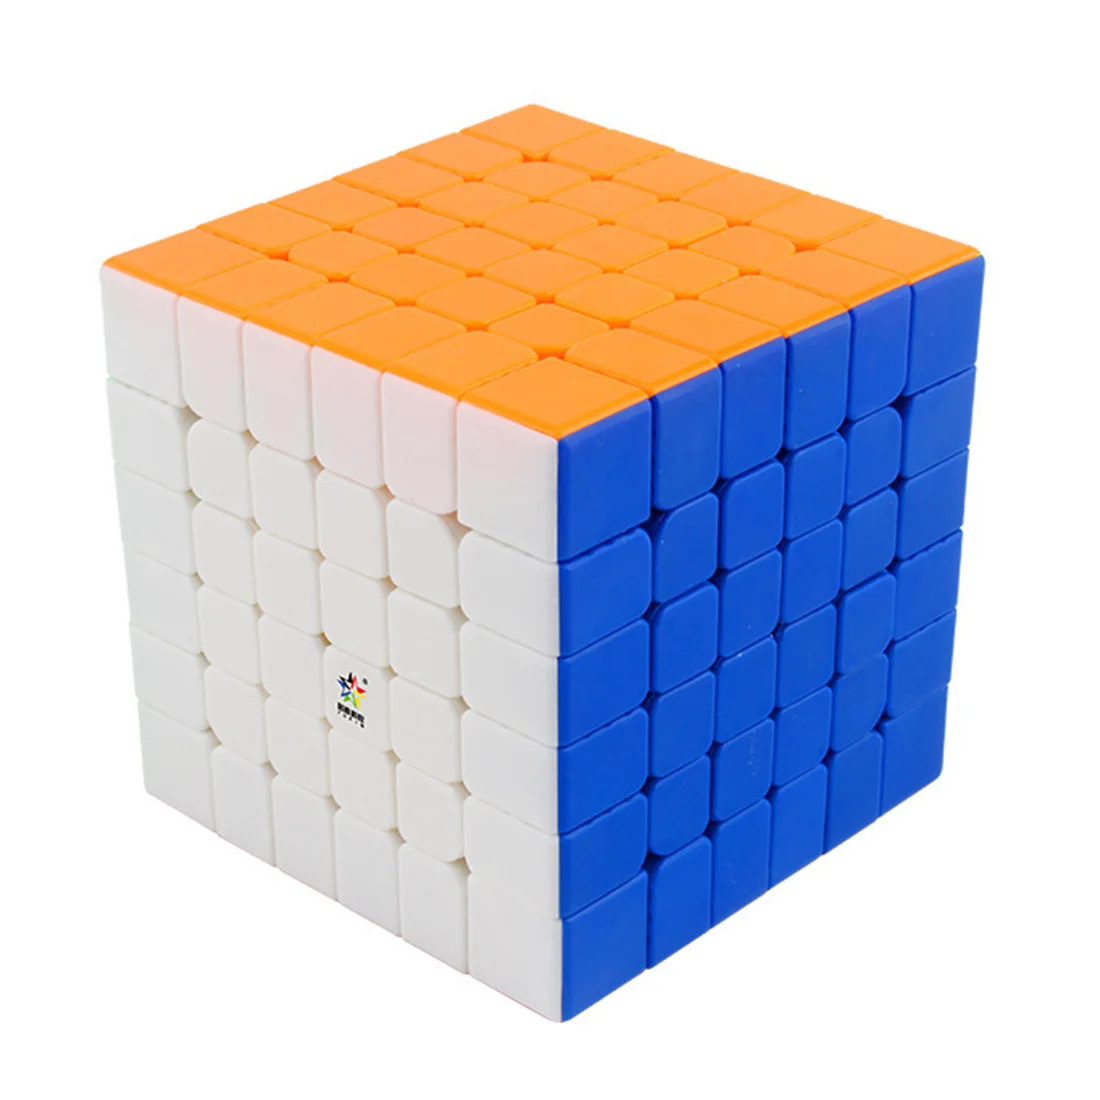 

Магический куб YuXin Little Magic 6x6 м, профессиональный скоростной куб-головоломка без наклеек, игрушки, подарки для детей, магнитная версия